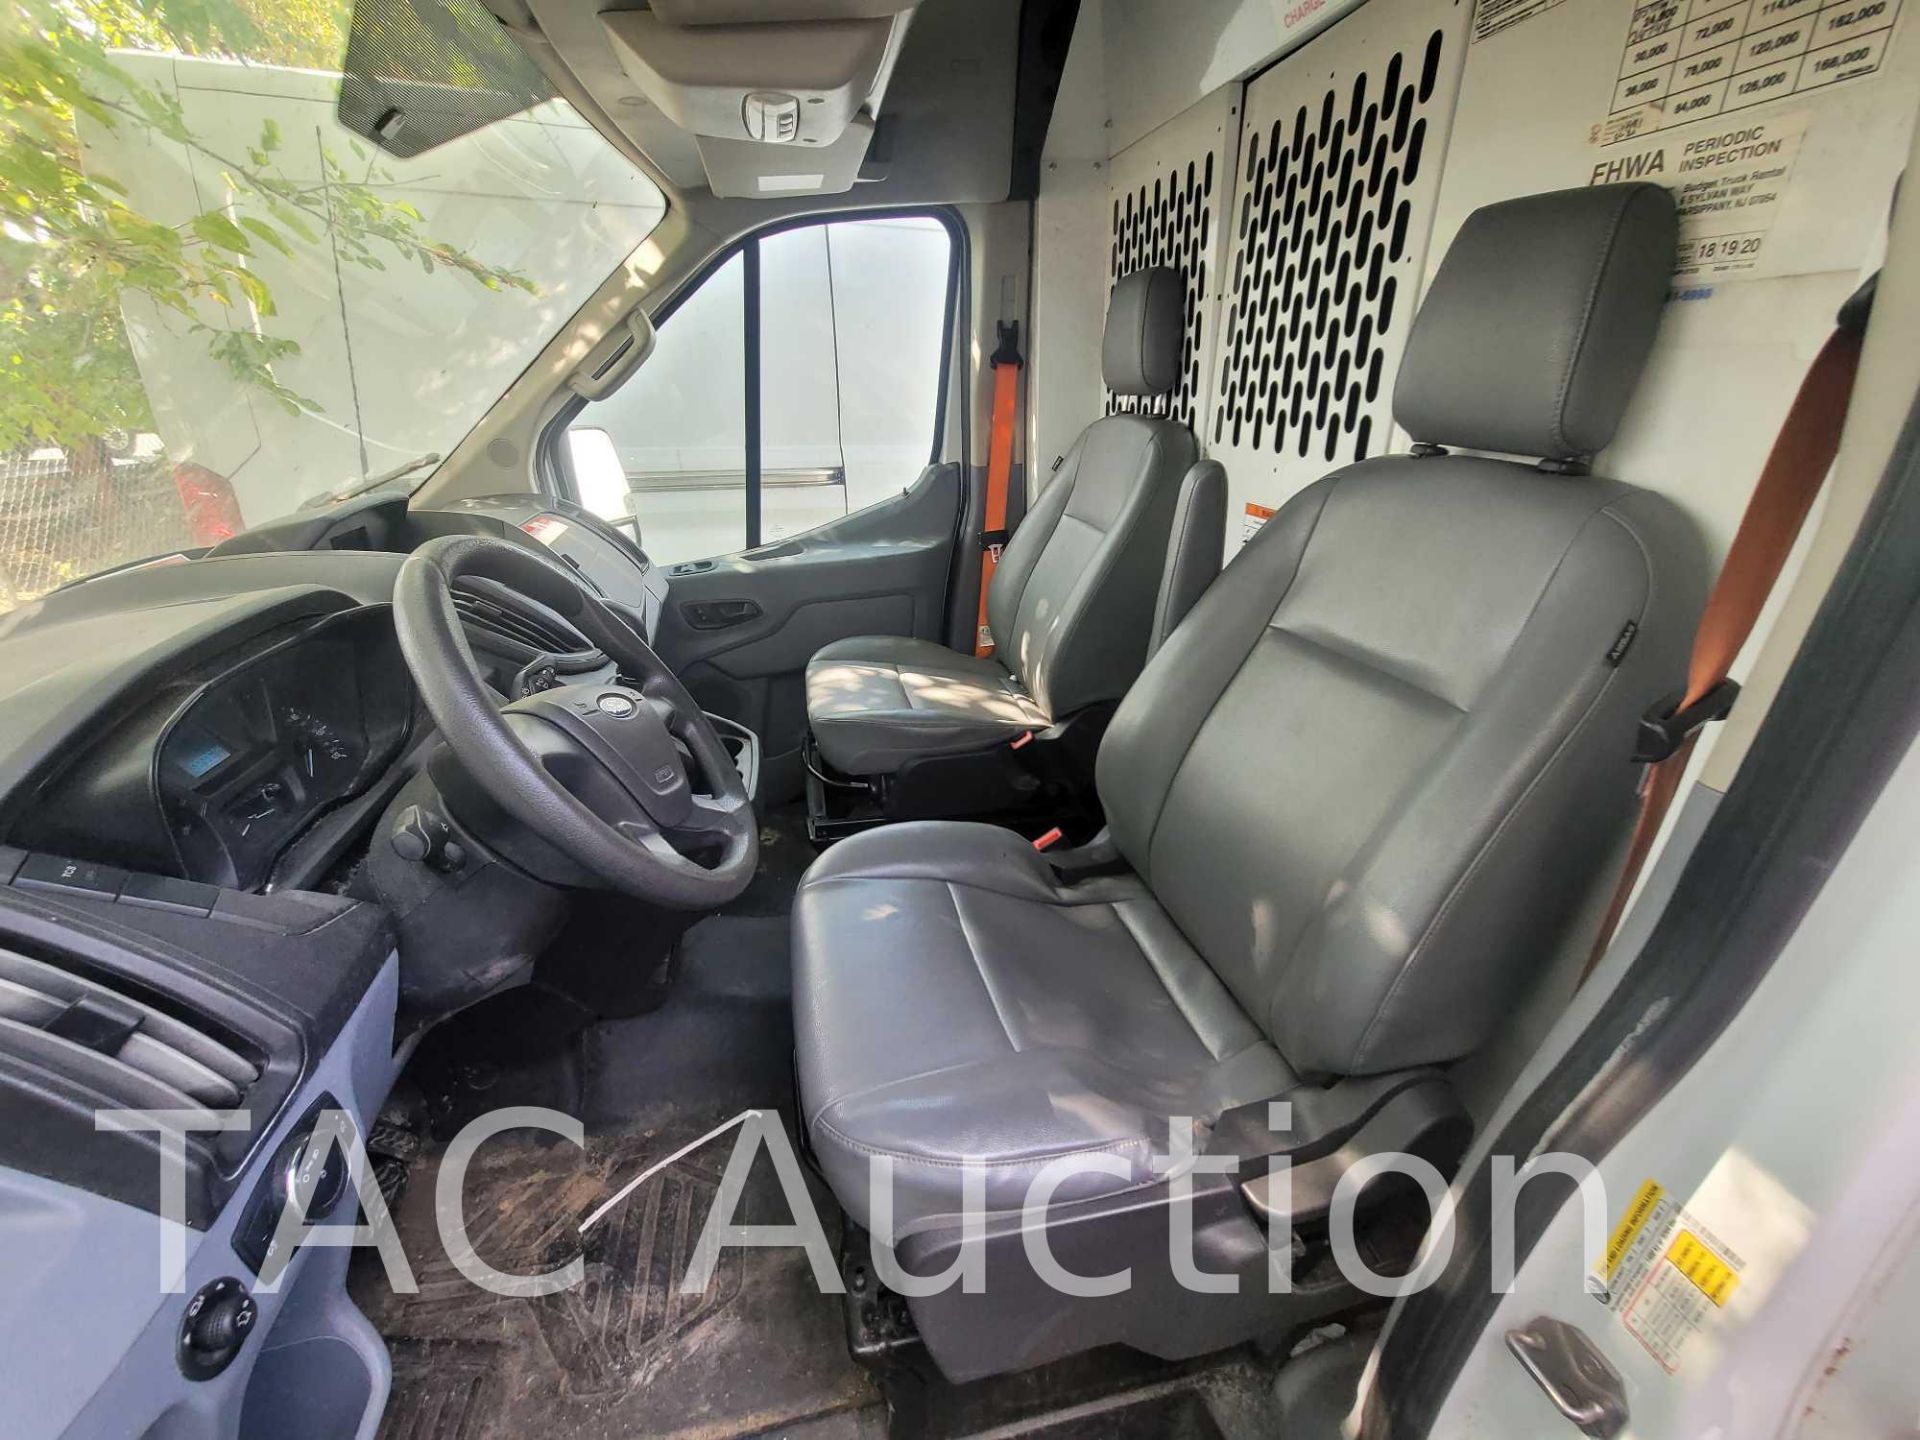 2019 Ford Transit 150 Cargo Van - Image 14 of 41